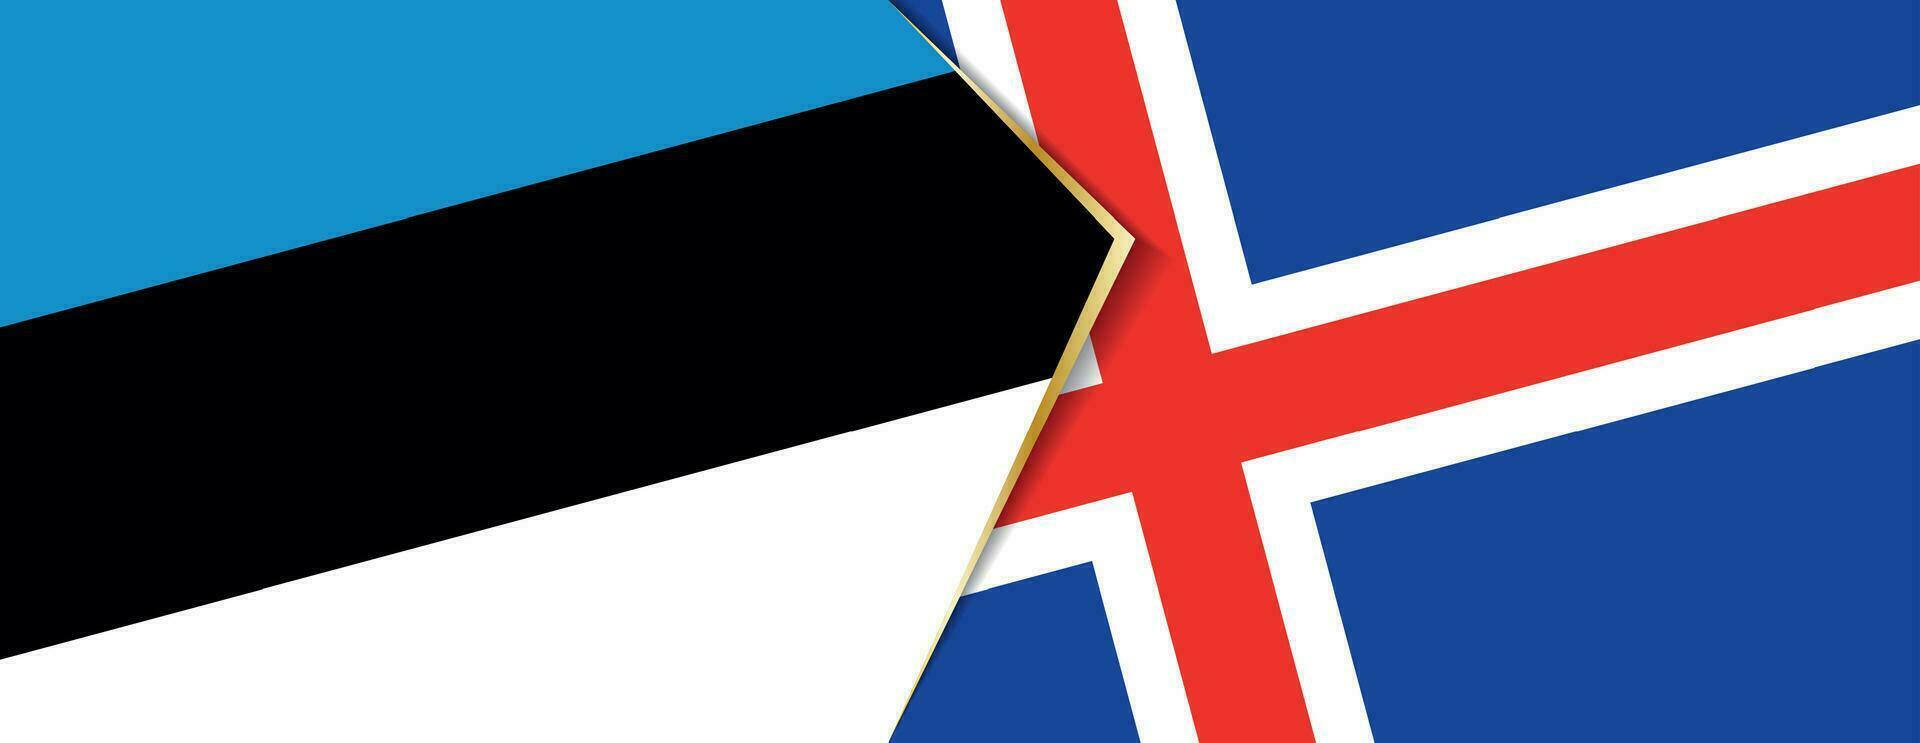 Estonia y Islandia banderas, dos vector banderas